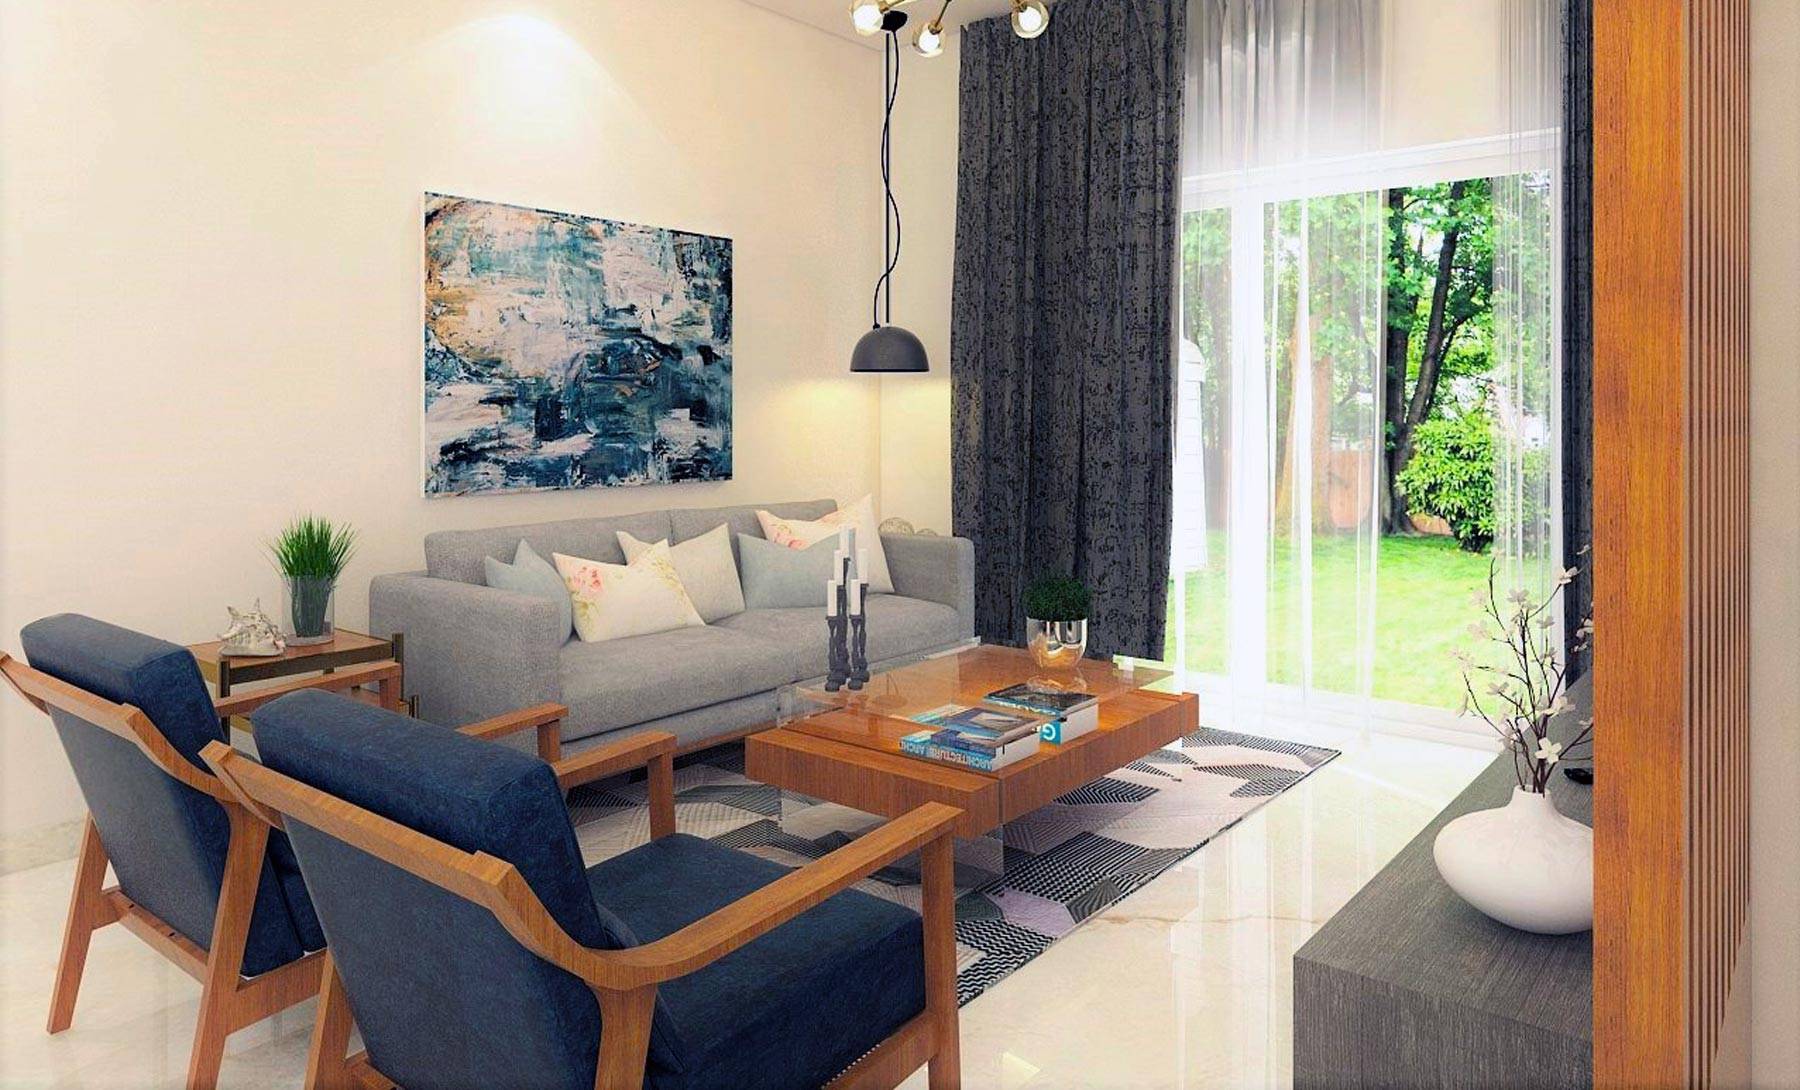 Kyrah Design,  Living Room Interior Design